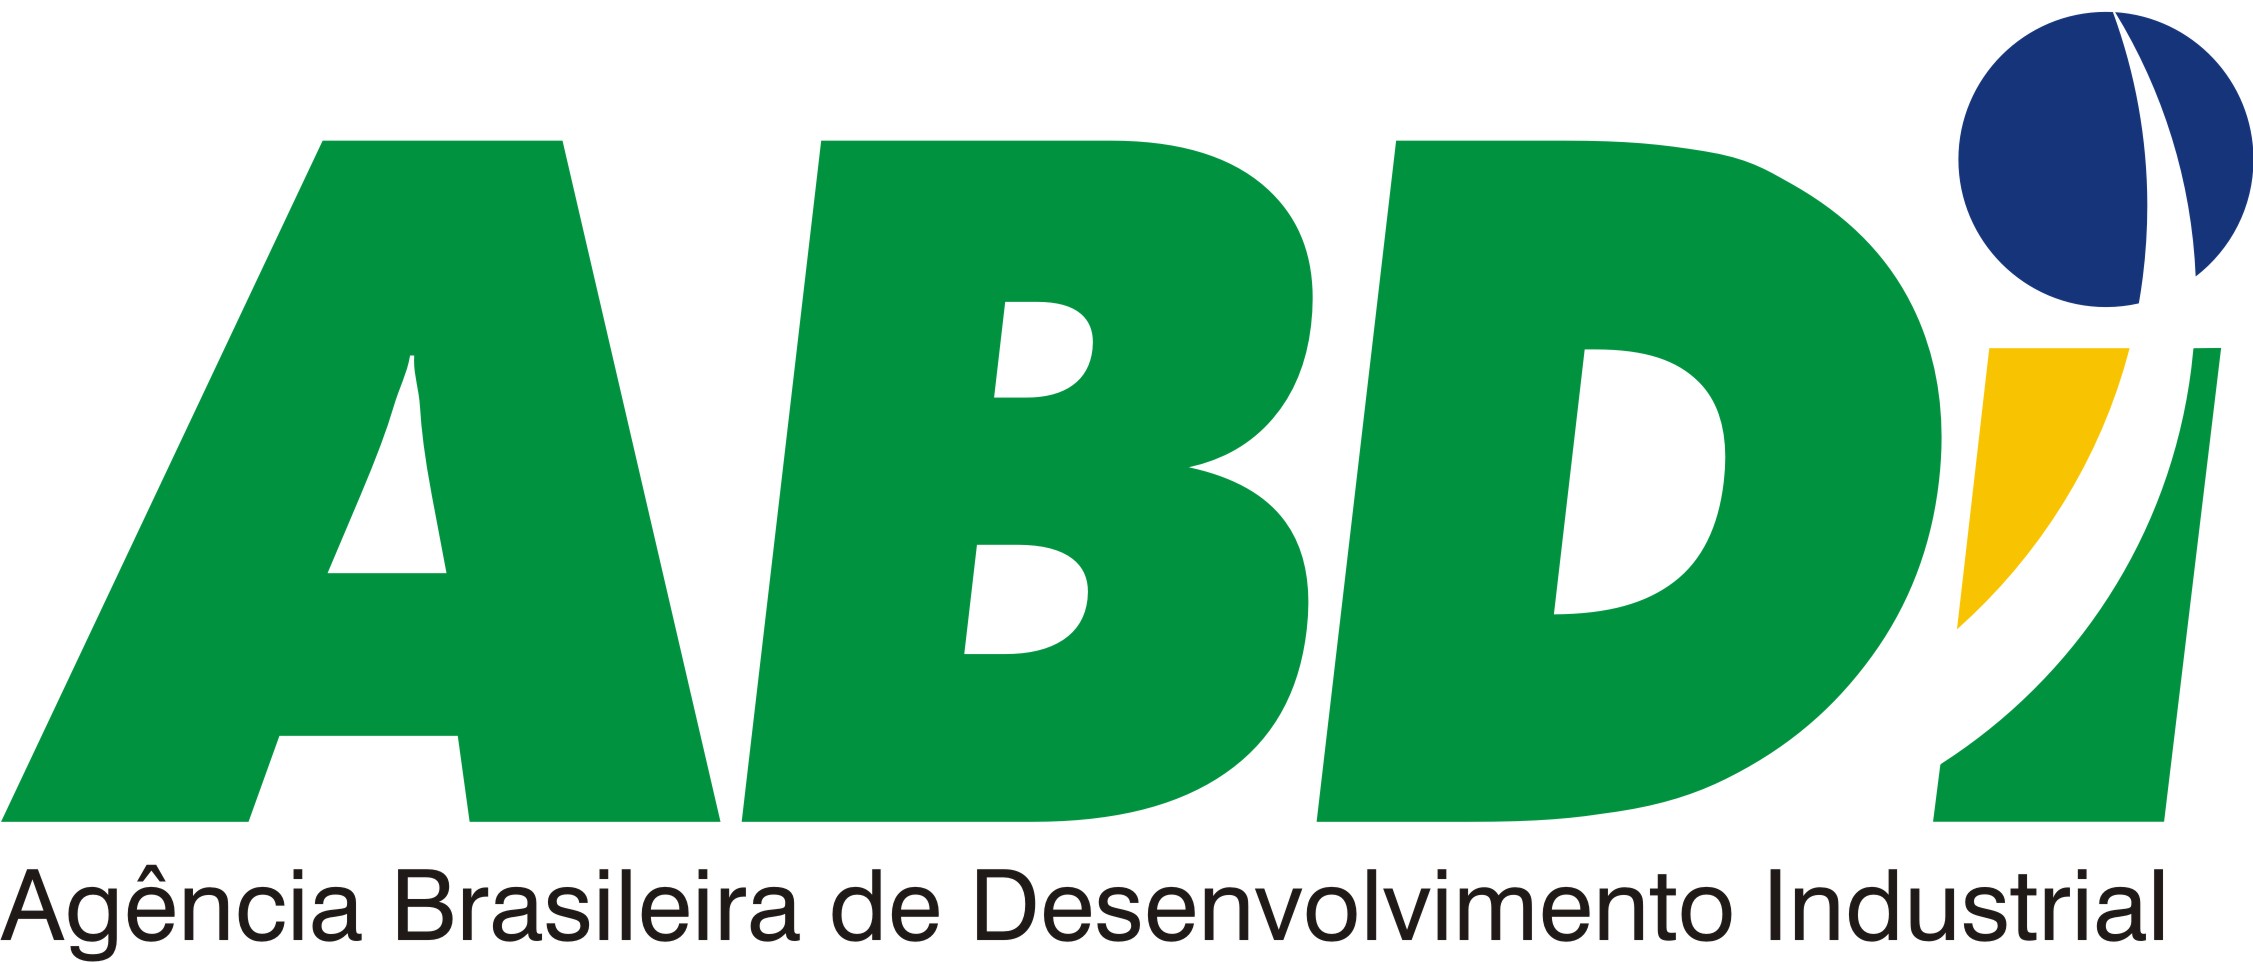 Logo Agência Brasileira de Desenvolvimento Industrial